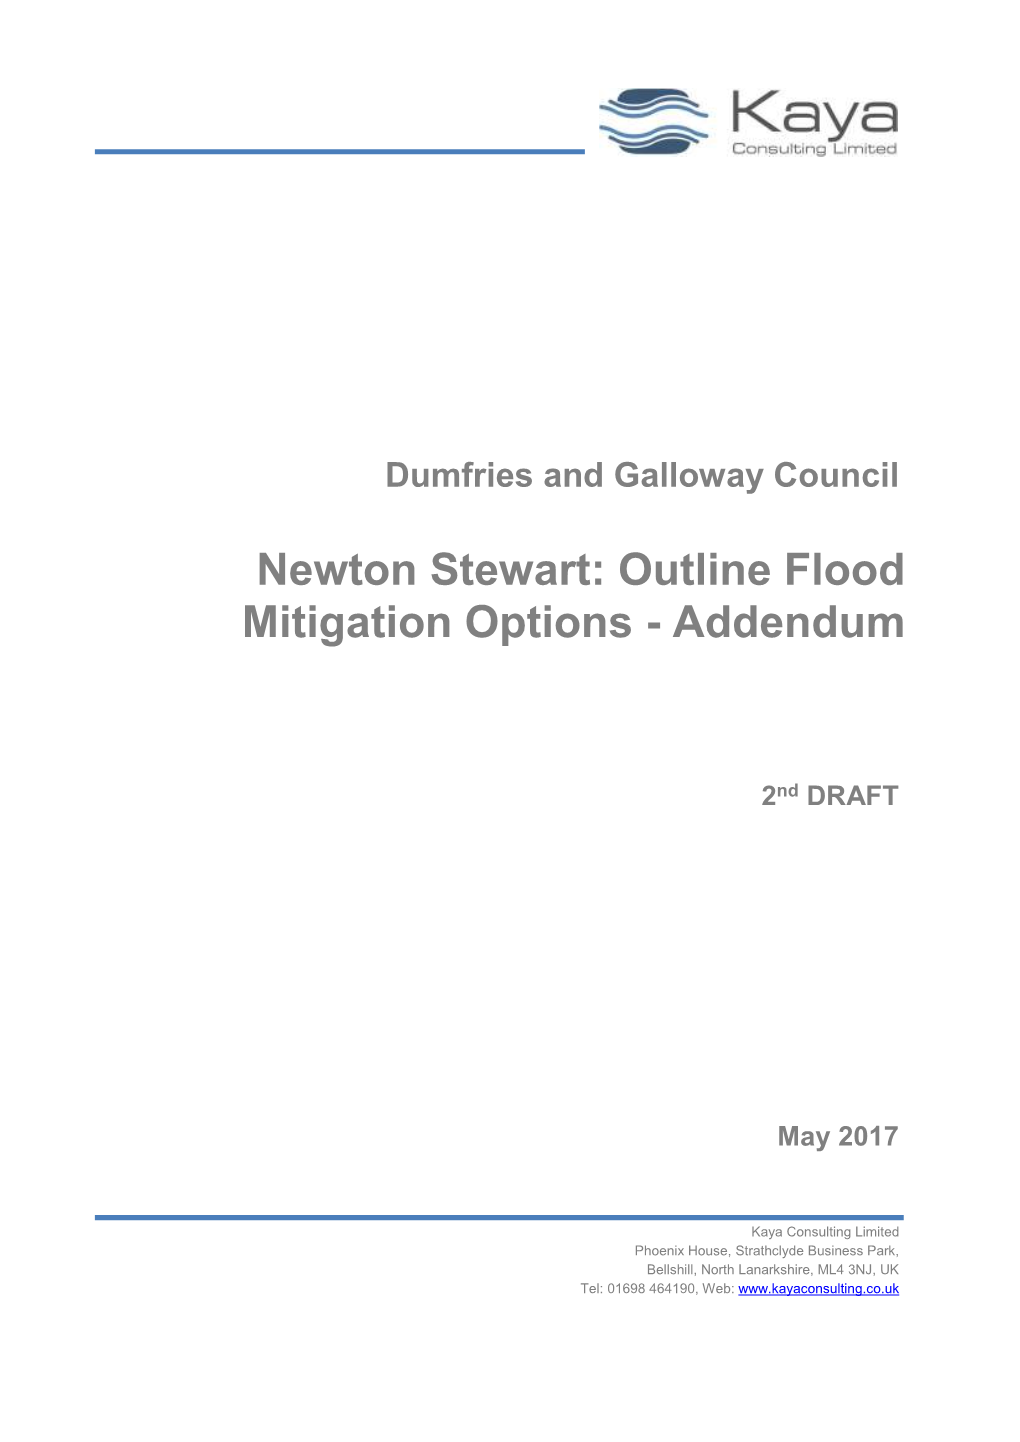 Newton Stewart: Outline Flood Mitigation Options - Addendum